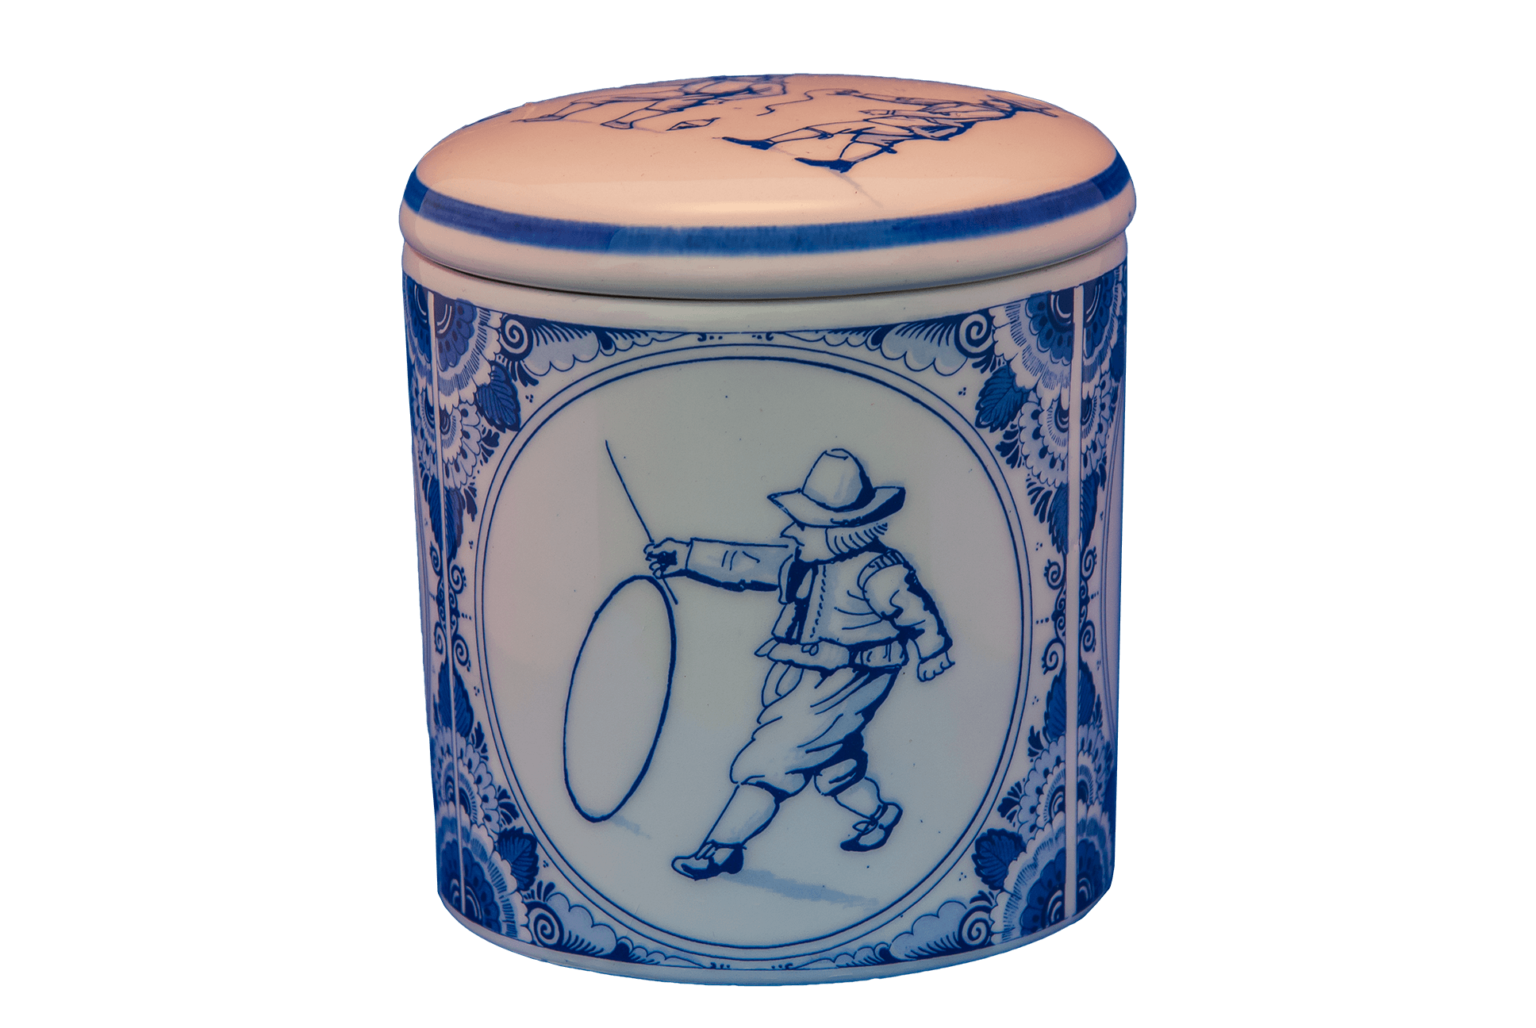 Pot aardewerk Delftsblauw, met print van oud-Hollandse spellen